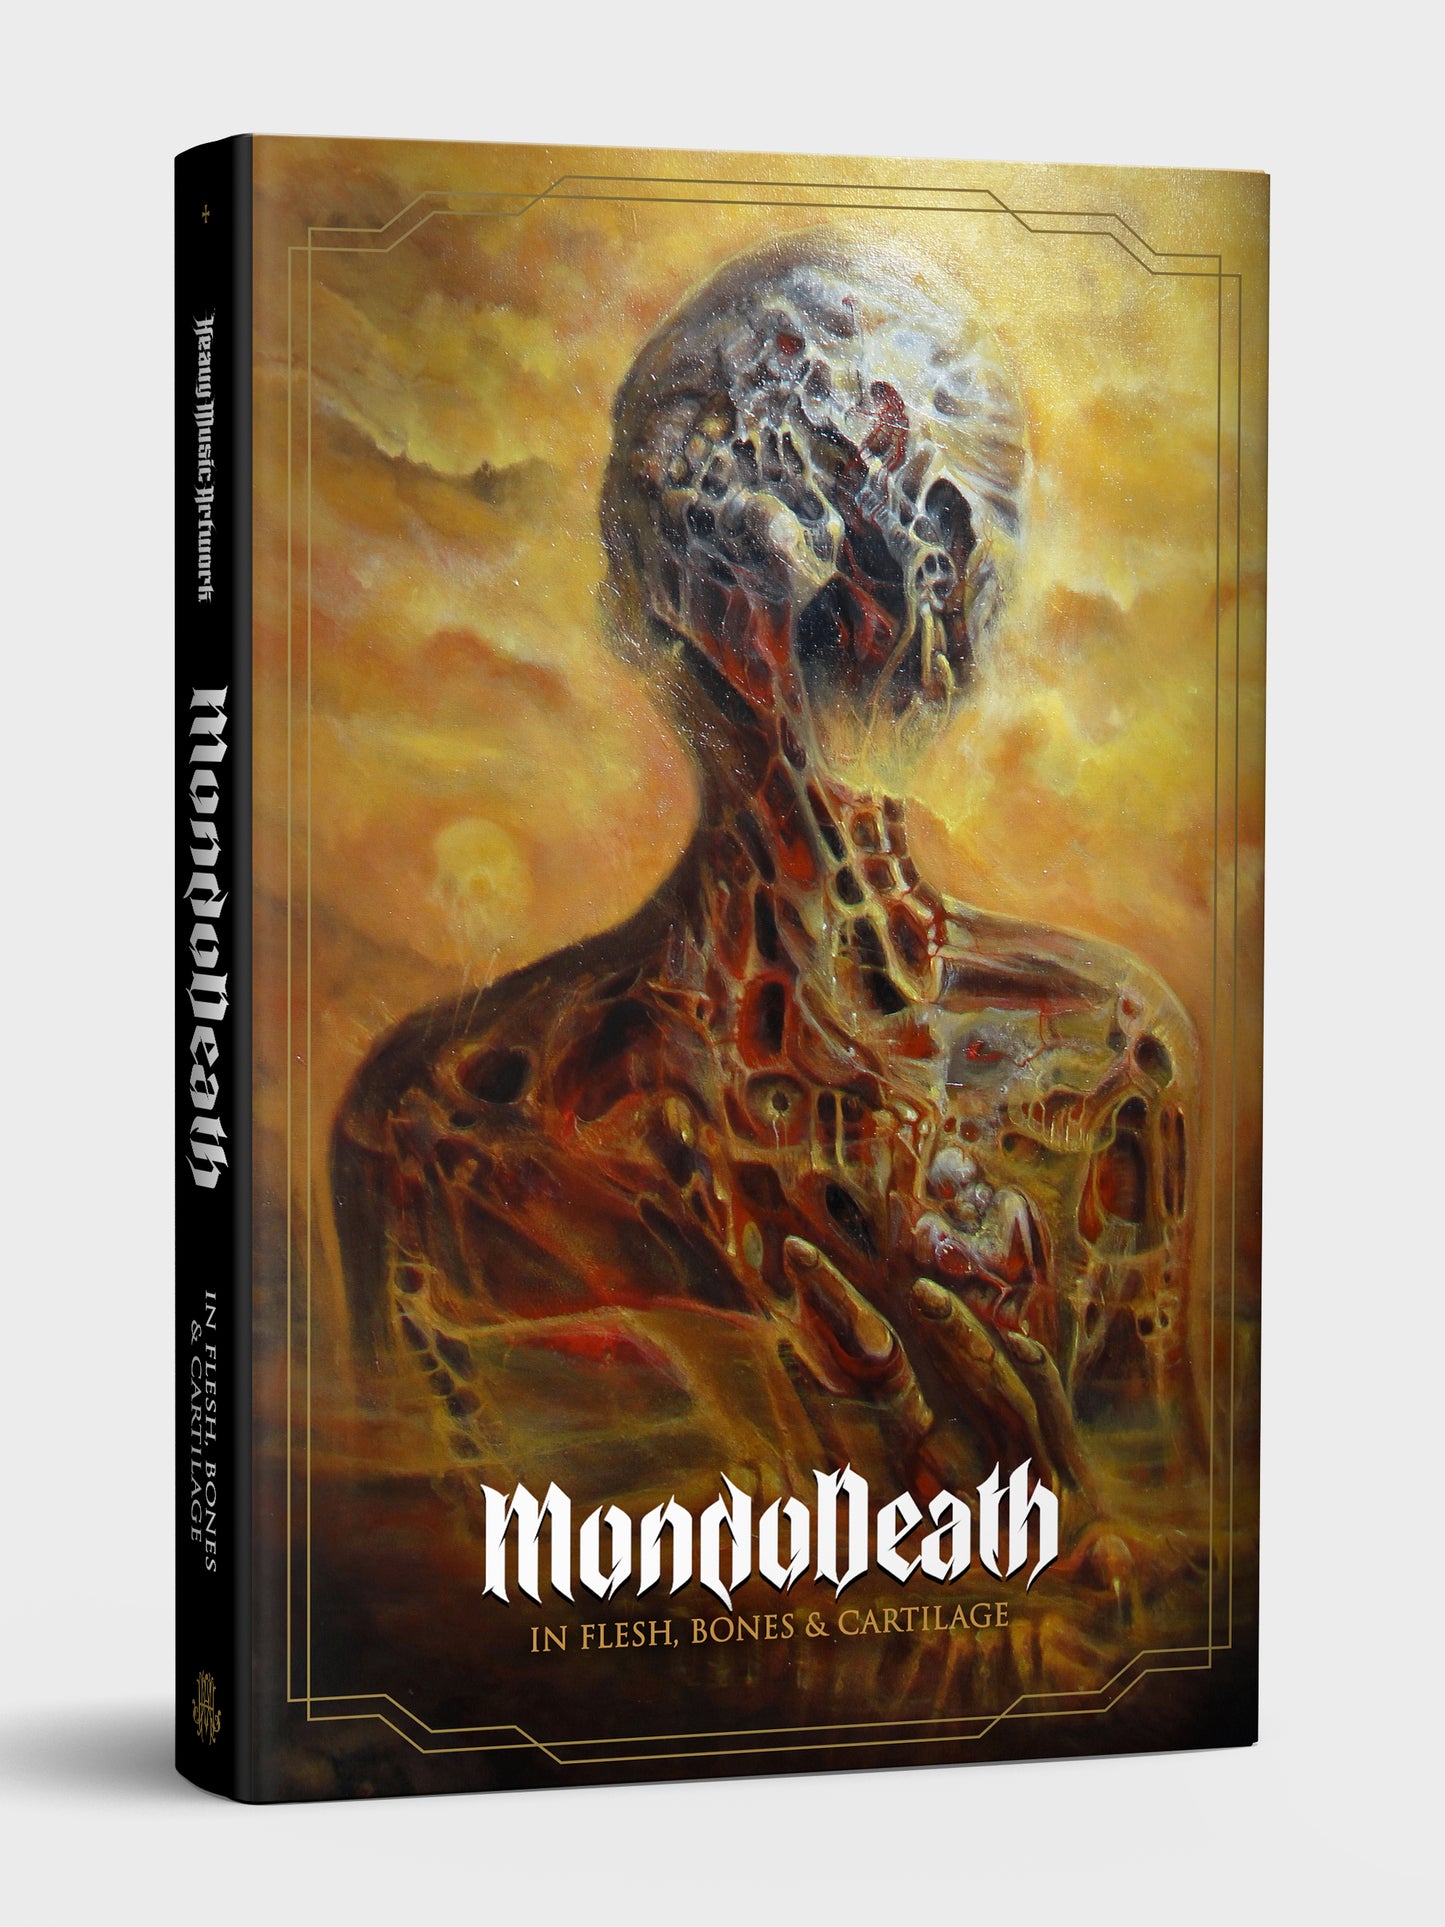 Mondo Death, In Flesh, Bones & Cartilage